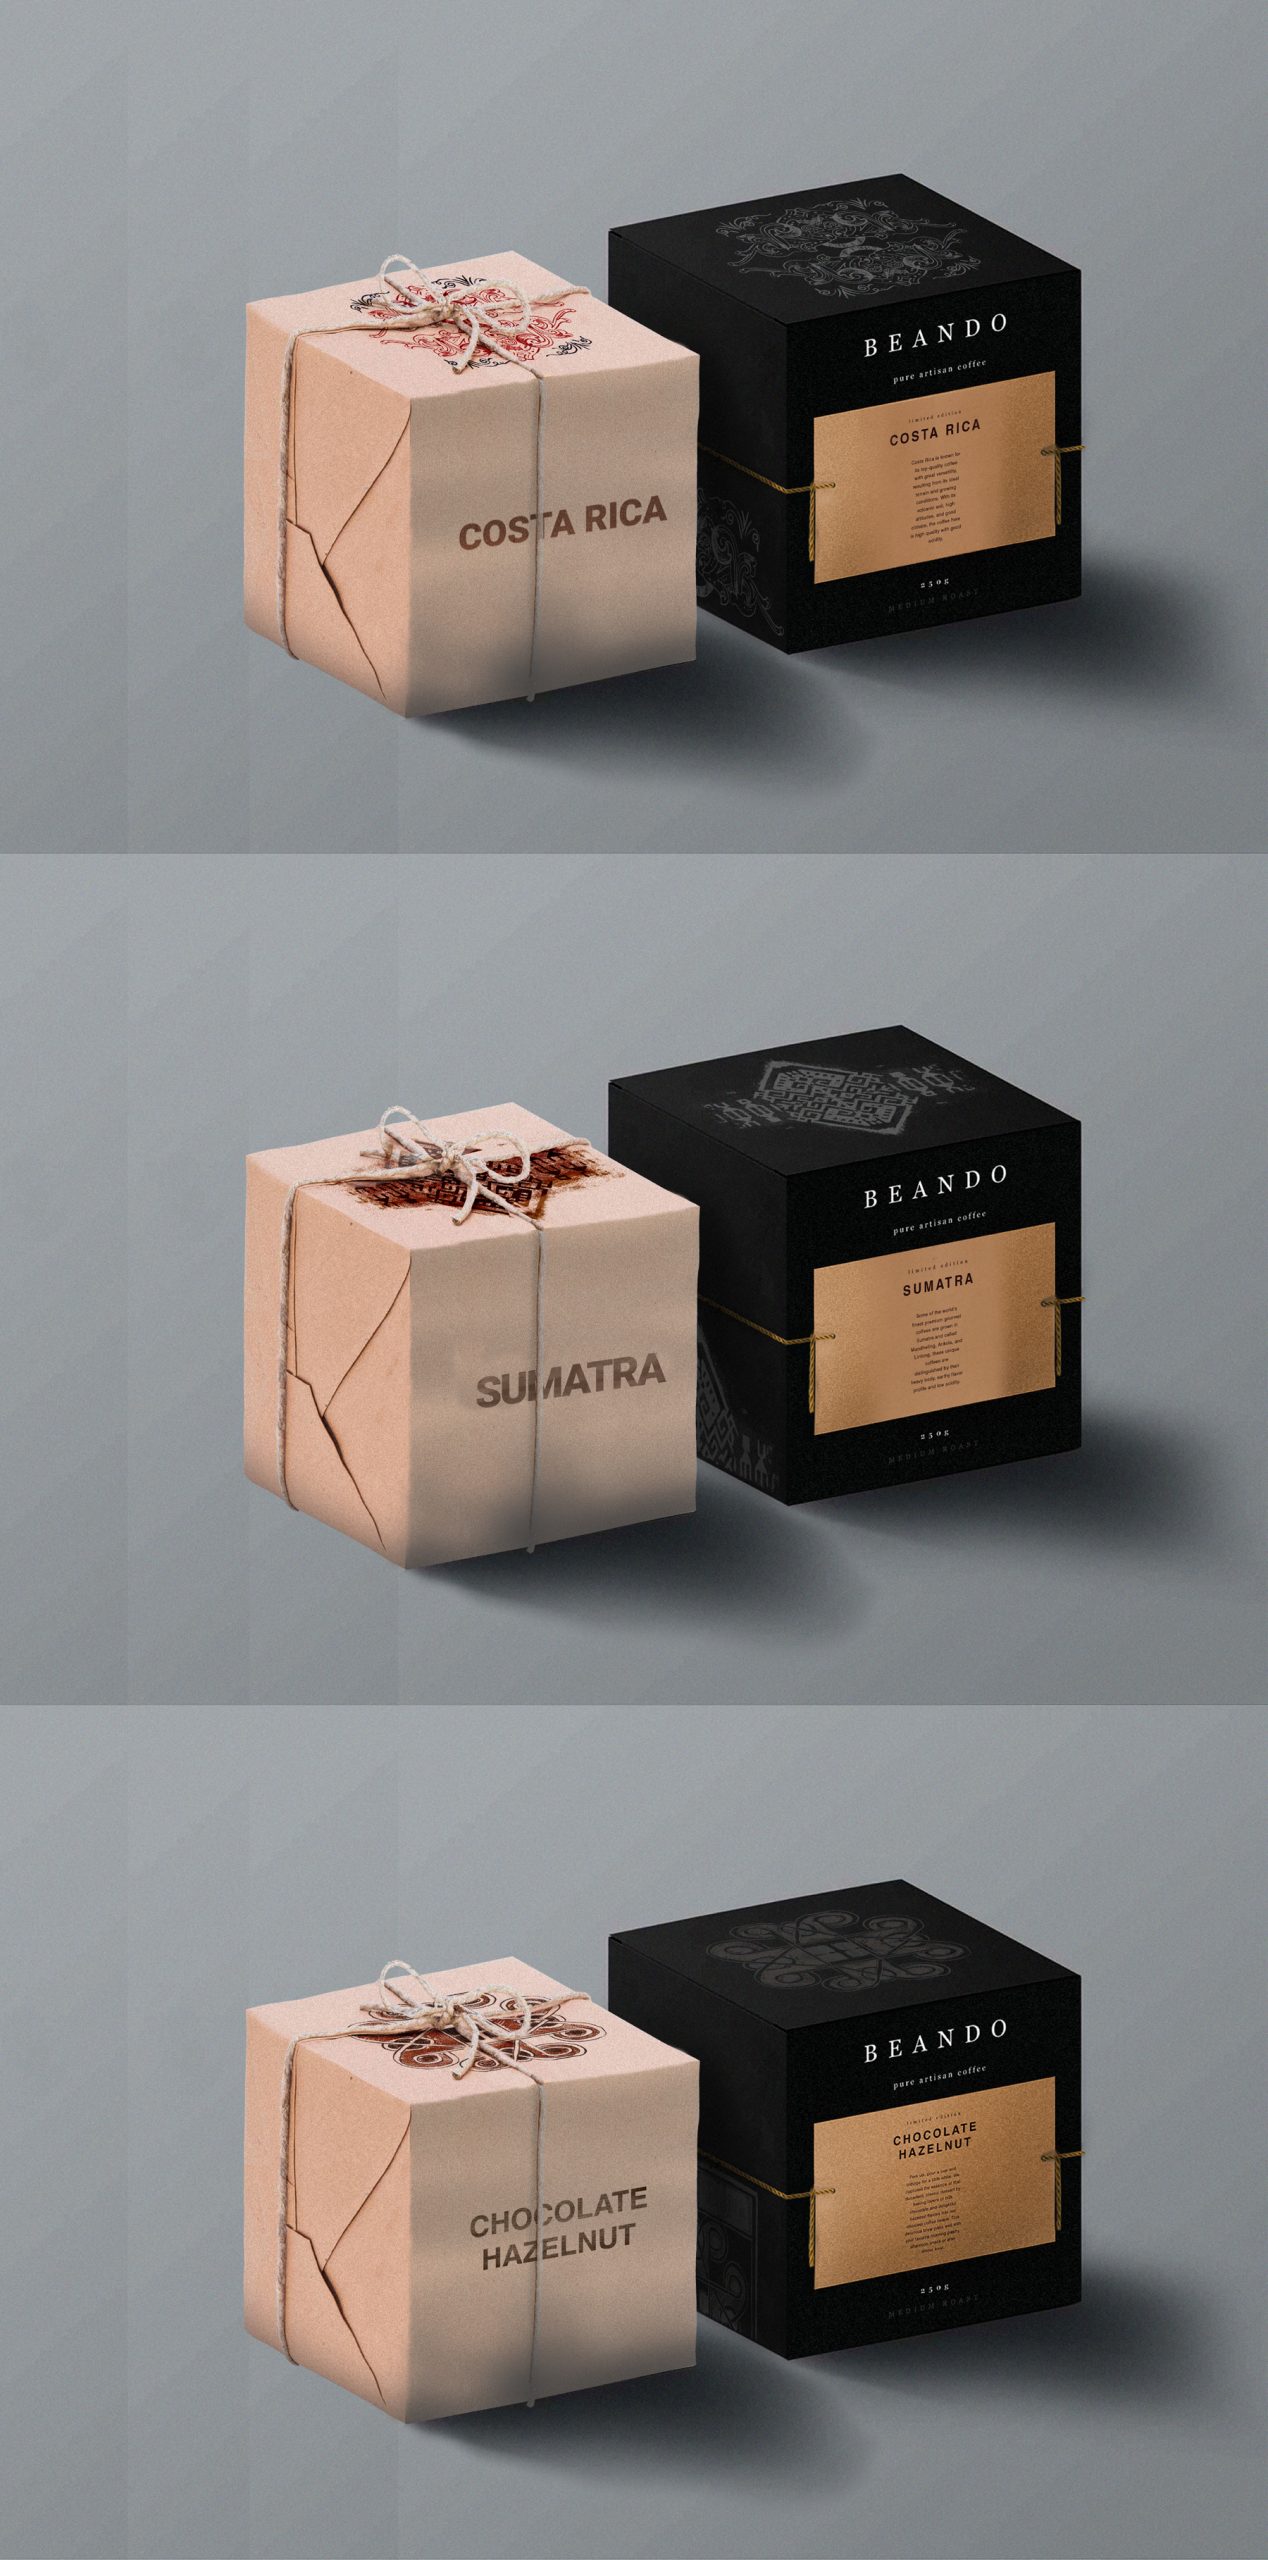 02 Dizajn serije pakovanja Beando kafa, Costa Rica, Sumatra, Chocolate Hazelnut